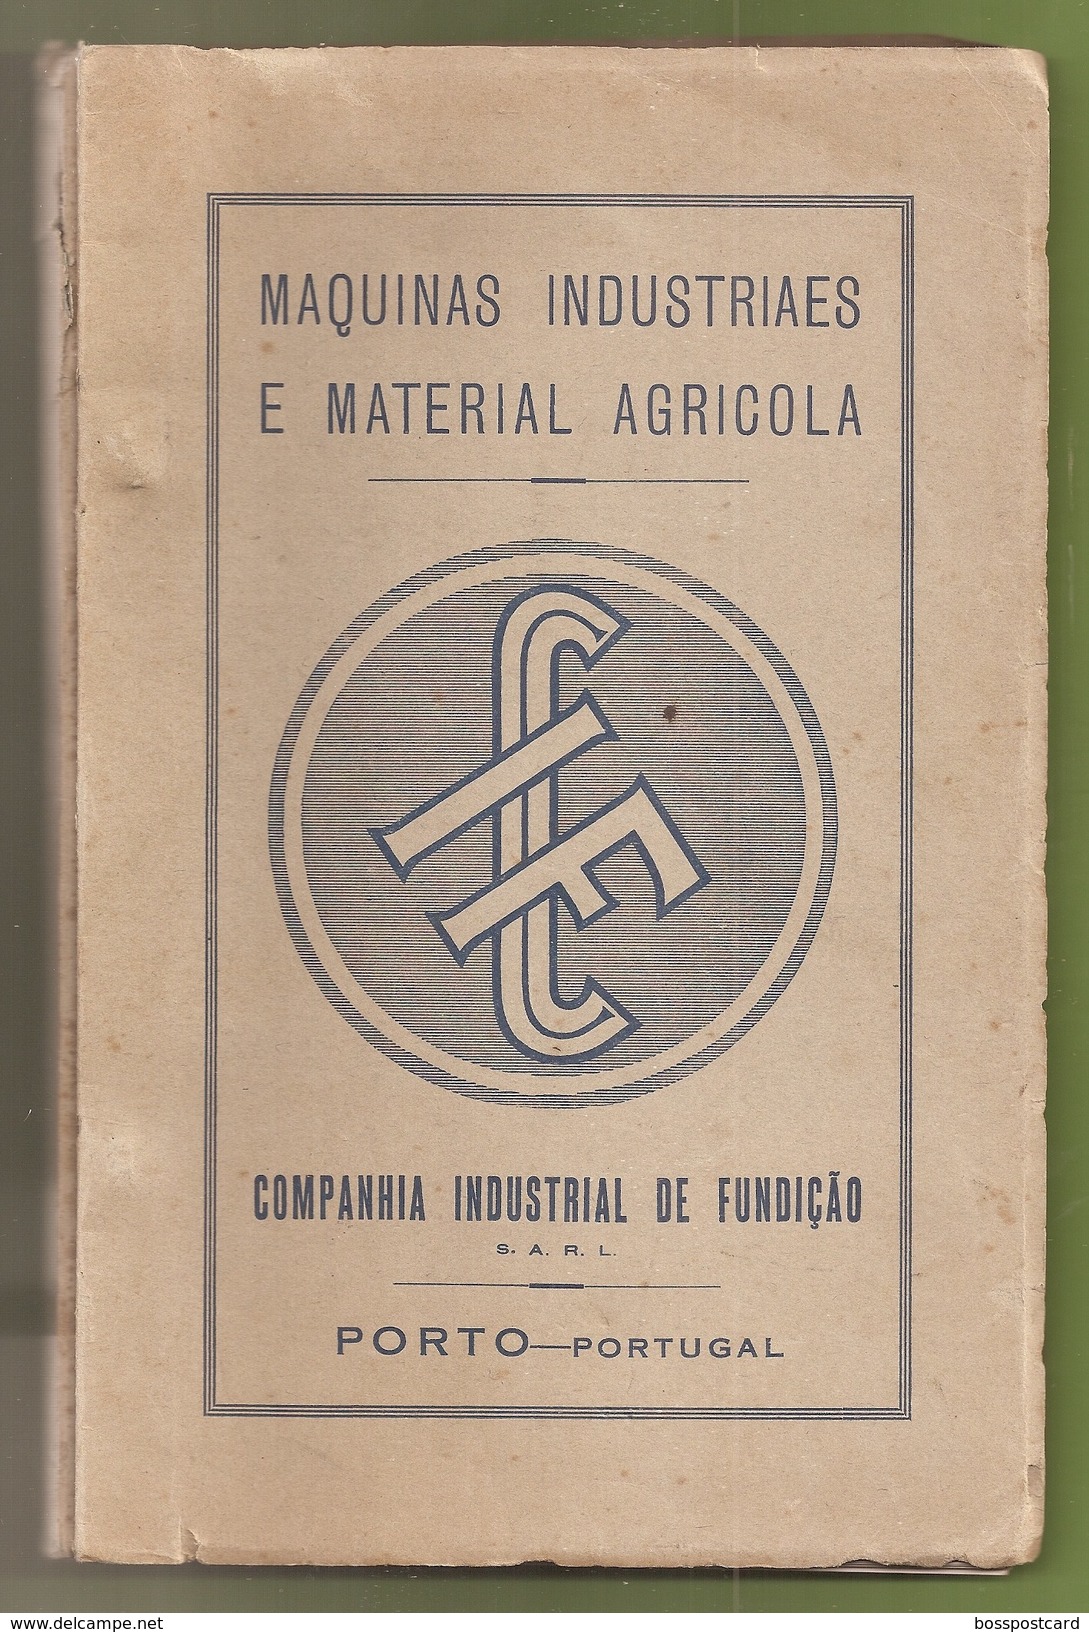 Porto - Catalogo Da Companhia Industrial De Fundição De 1931 - Publicidade - Portugal - Pubblicitari